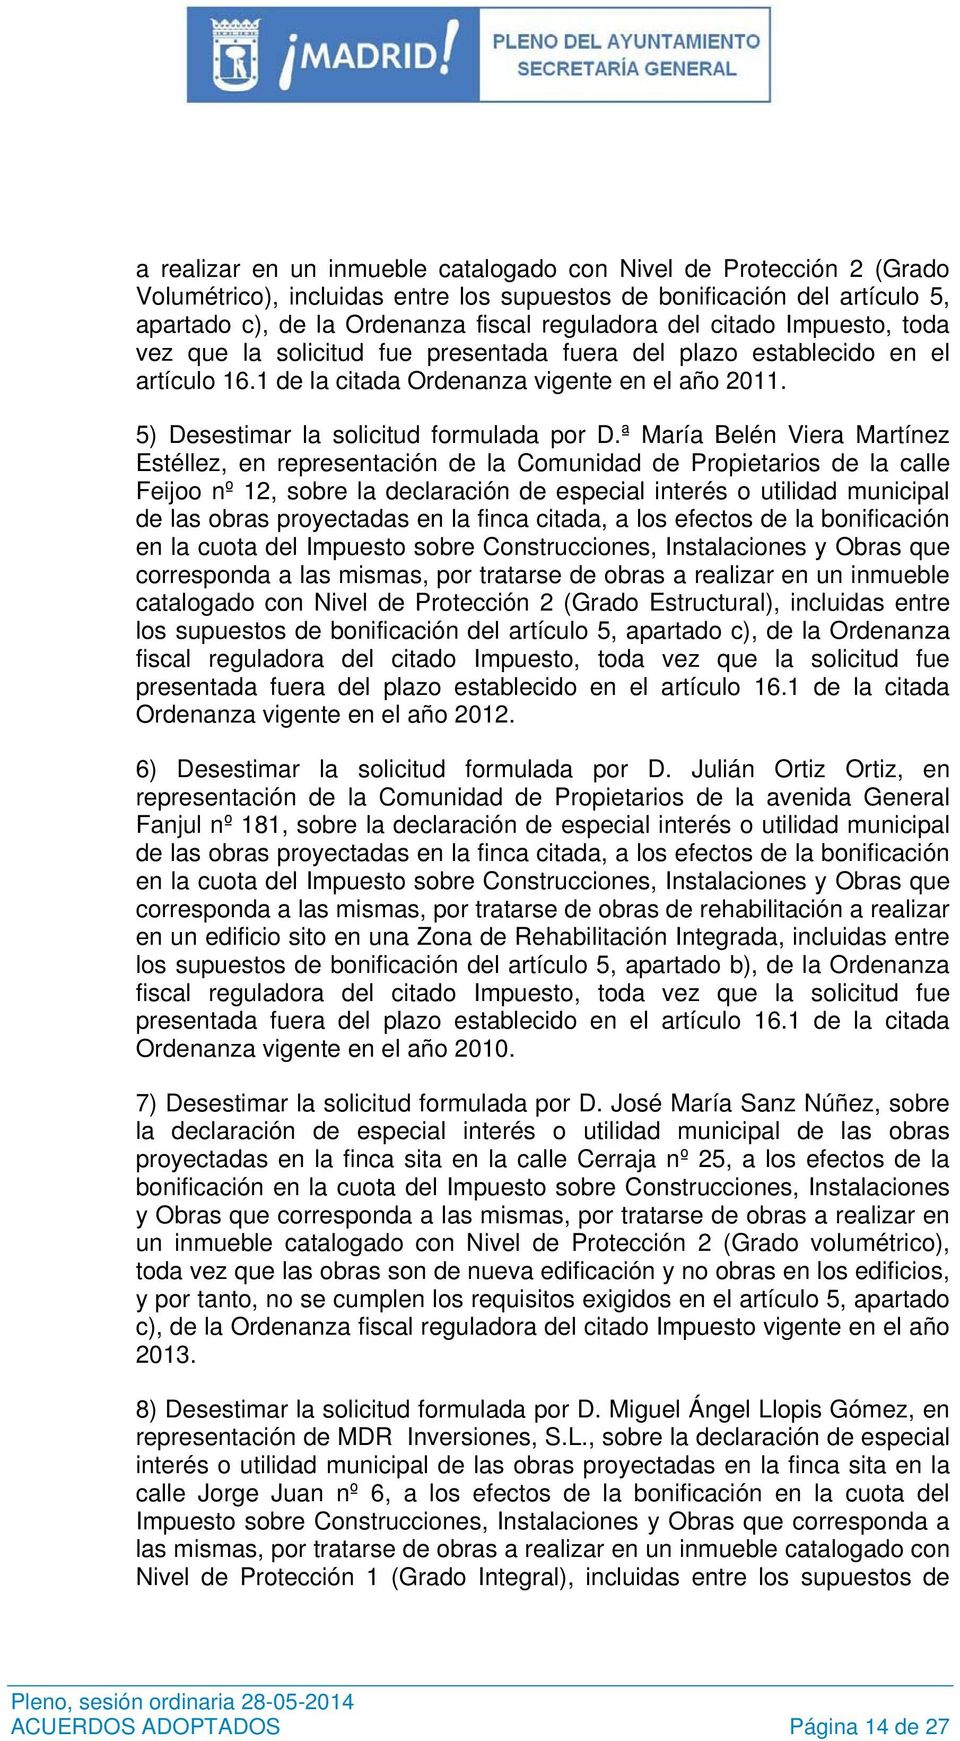 ª María Belén Viera Martínez Estéllez, en representación de la Comunidad de Propietarios de la calle Feijoo nº 12, sobre la declaración de especial interés o utilidad municipal de las obras